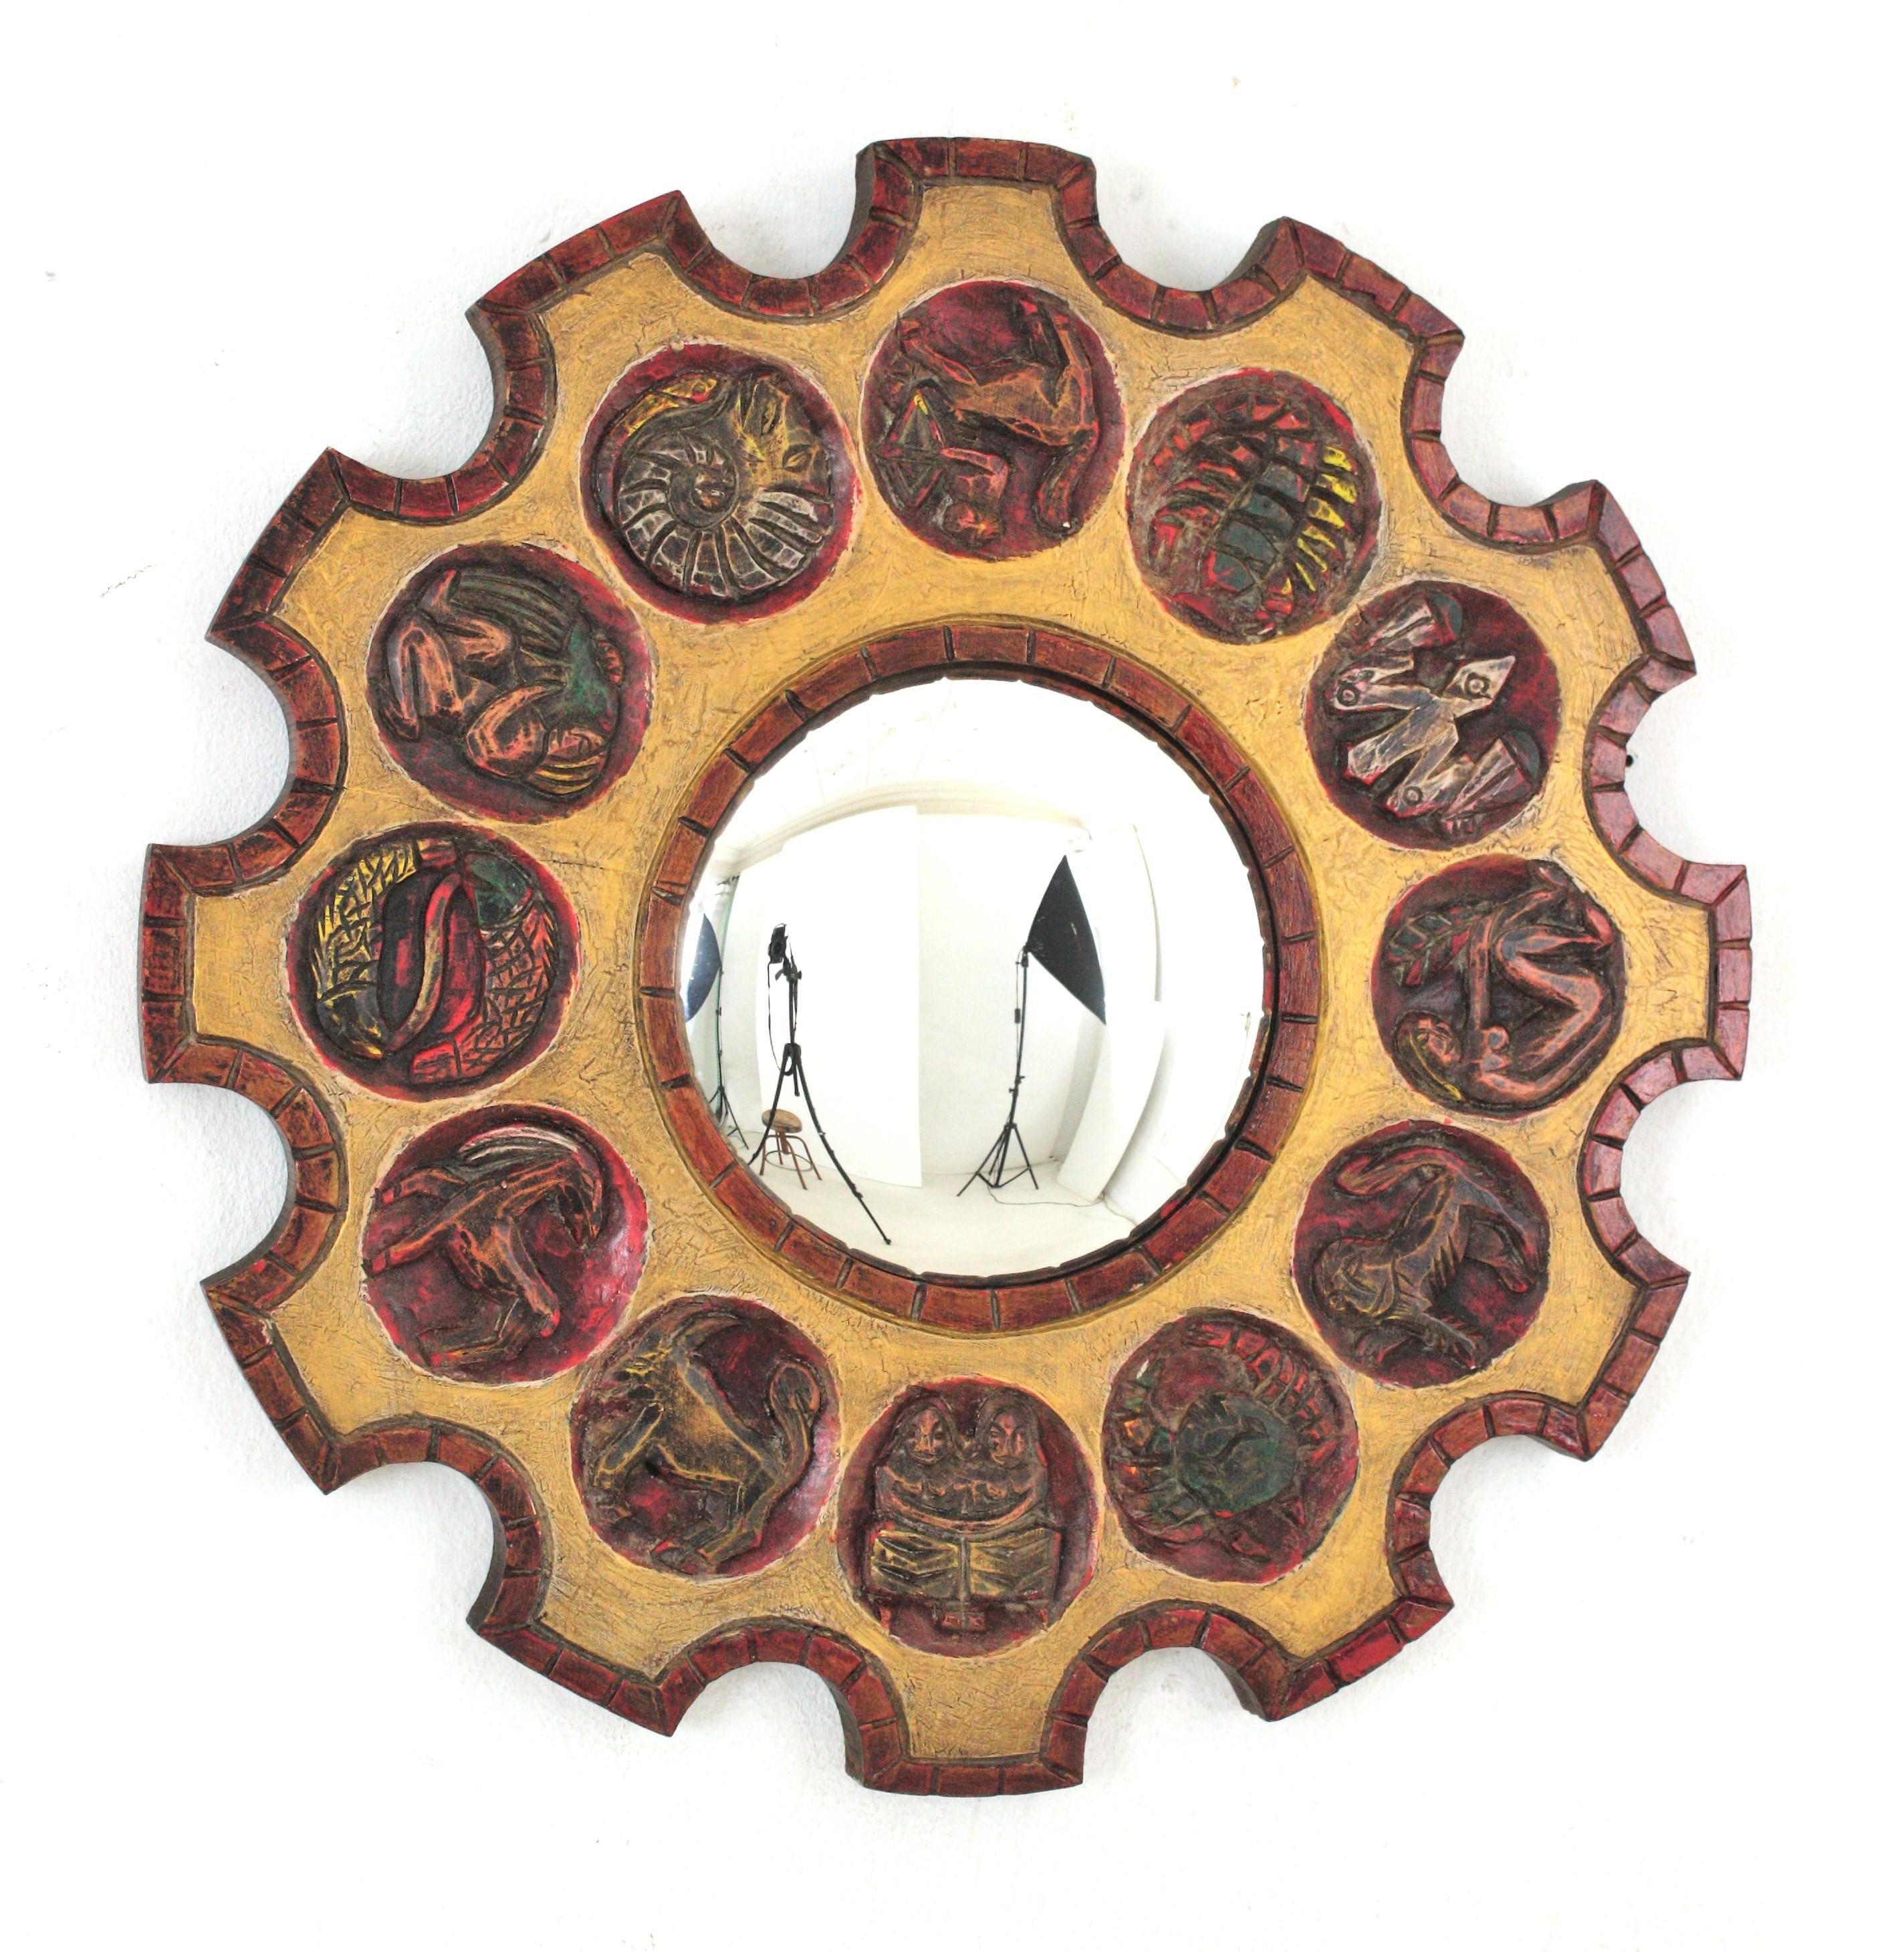 Konvexer Spiegel mit Sonnenschliff Zodiac aus geschnitztem Holz, Spanien, 1950er-1960er Jahre
Handgefertigter Horoskopspiegel mit rotem und vergoldetem Radrahmen und 12 Zodiac-Zeichen.
Stilisierte, handgeschnitzte Zodiacs auf einem vergoldeten